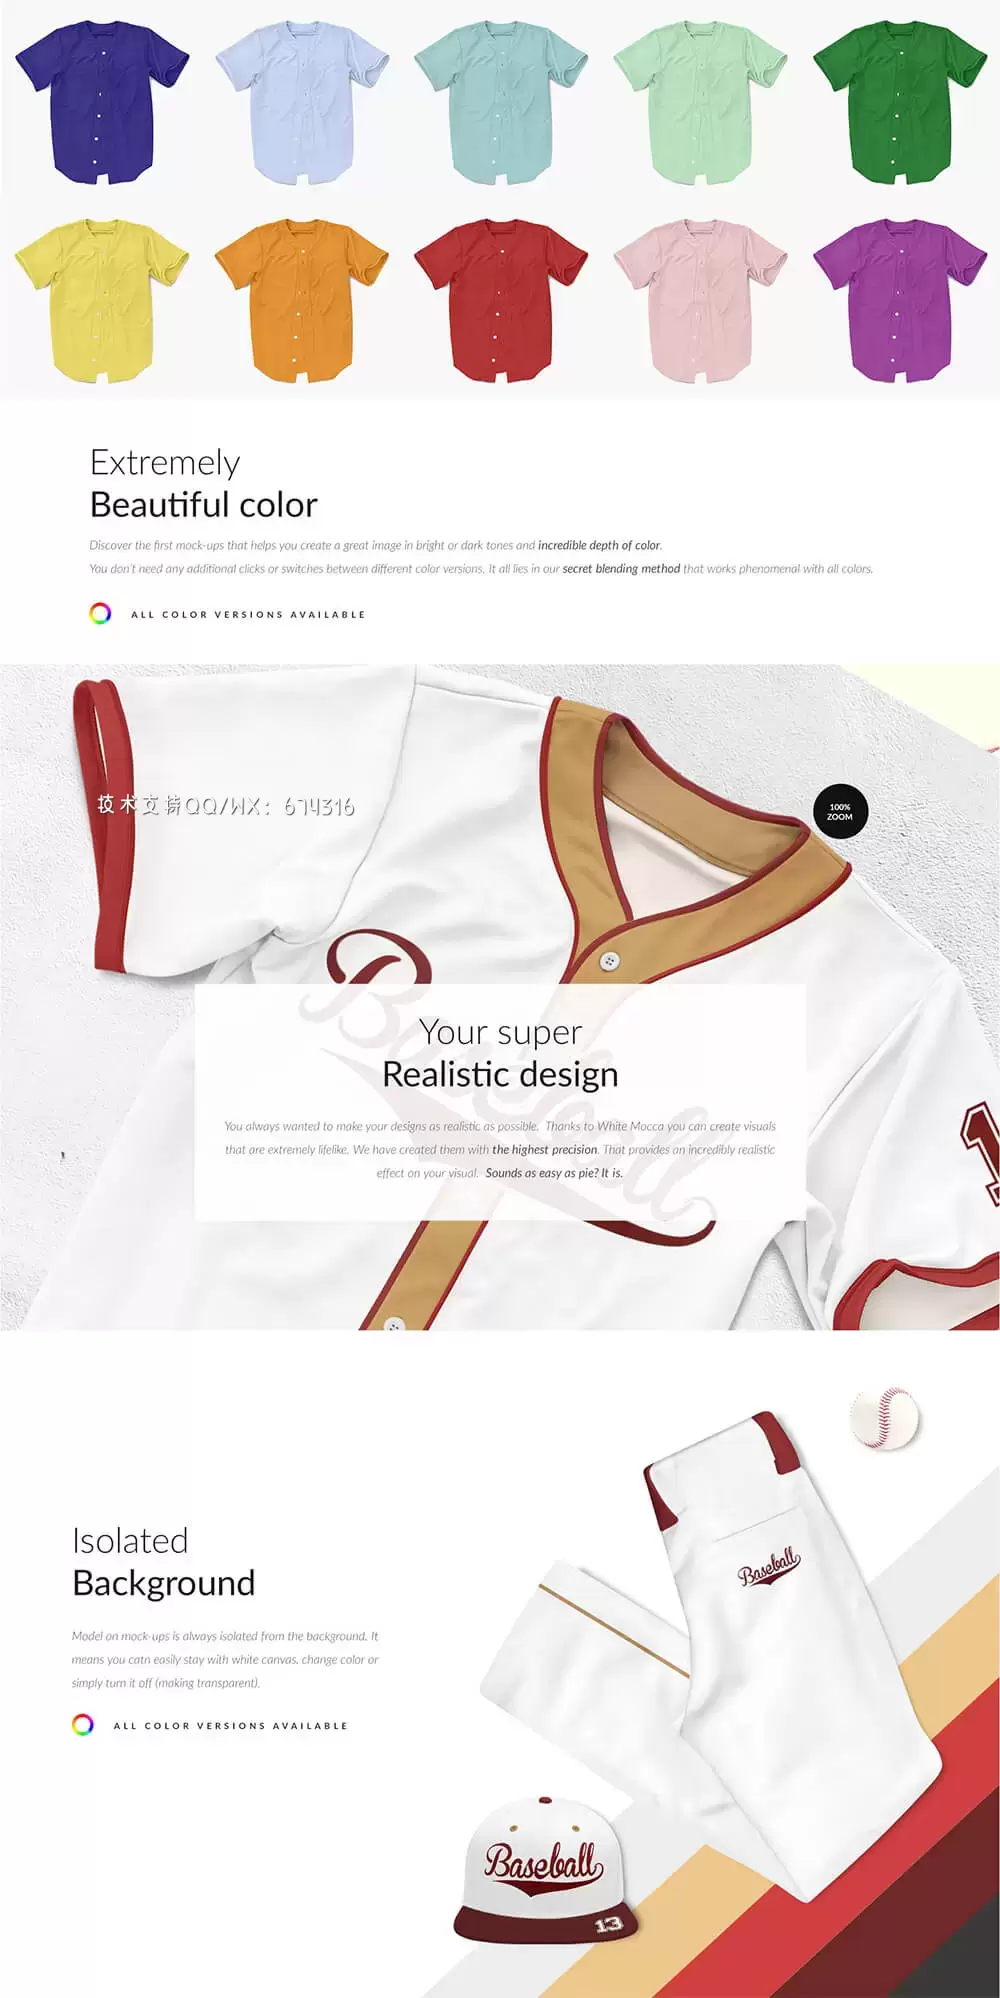 棒球服套装广告品牌设计样机 (psd)免费下载插图3